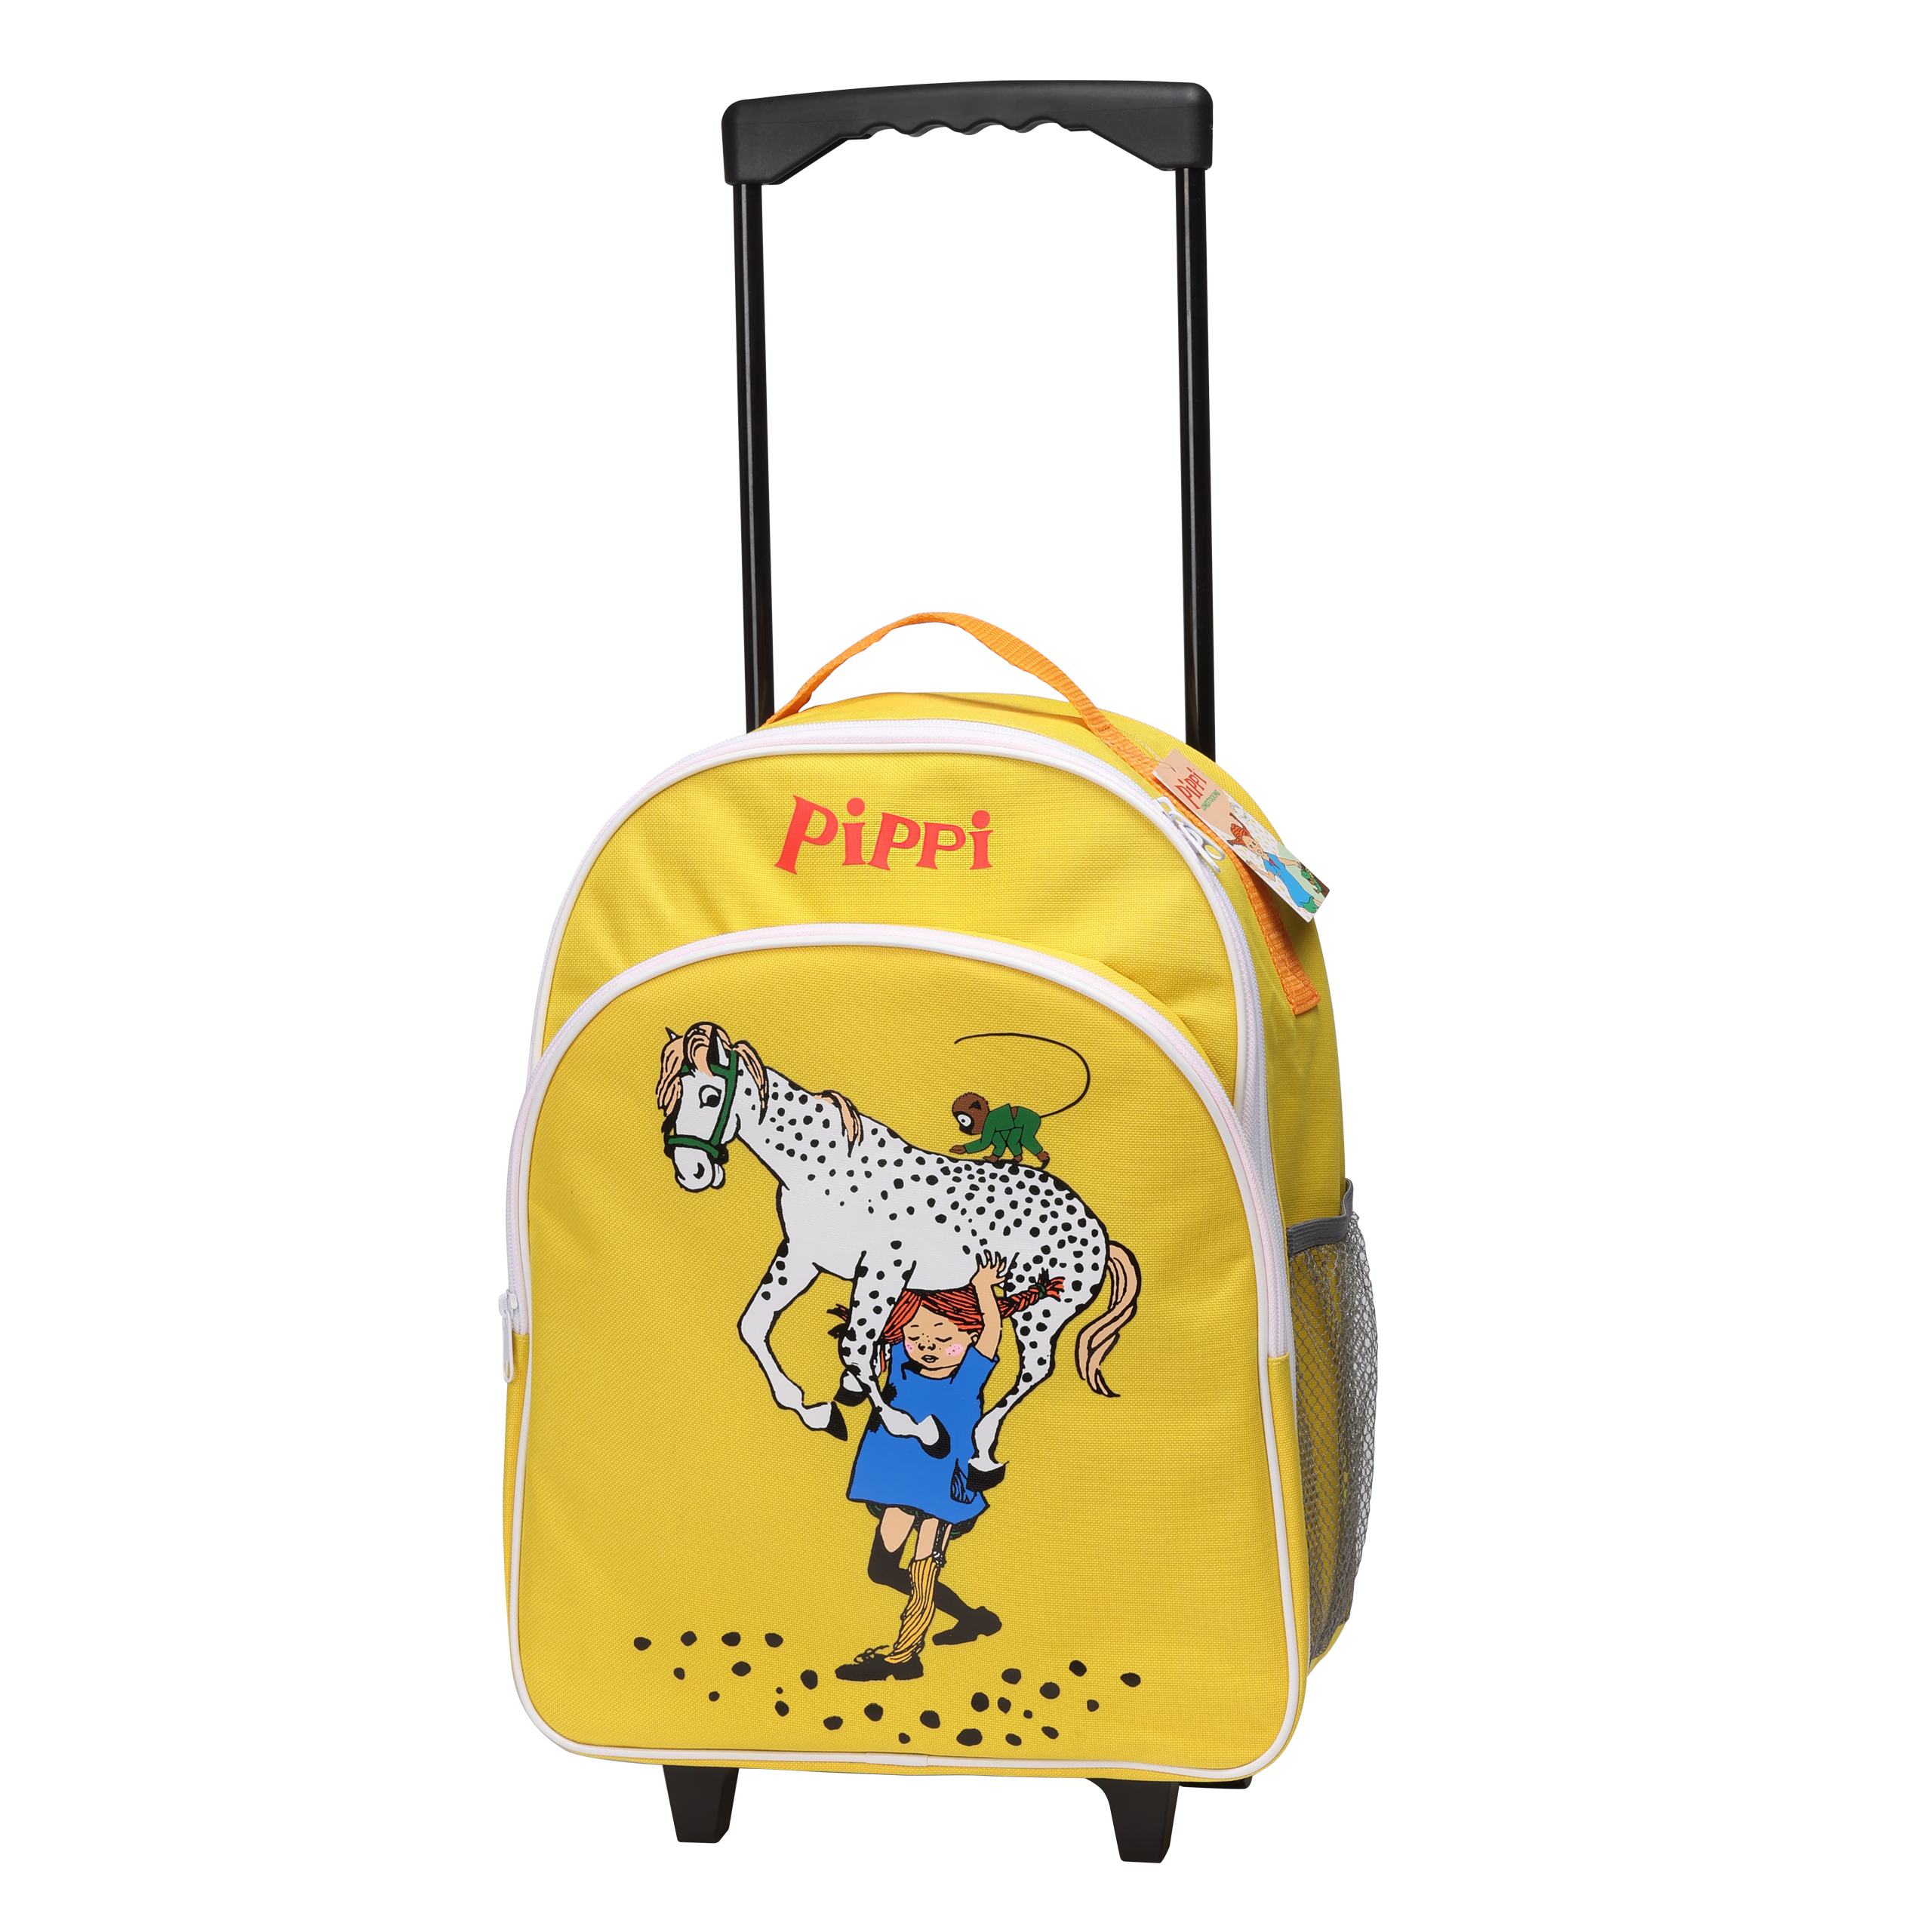 Pippi pippi børnetaske kuffert gul